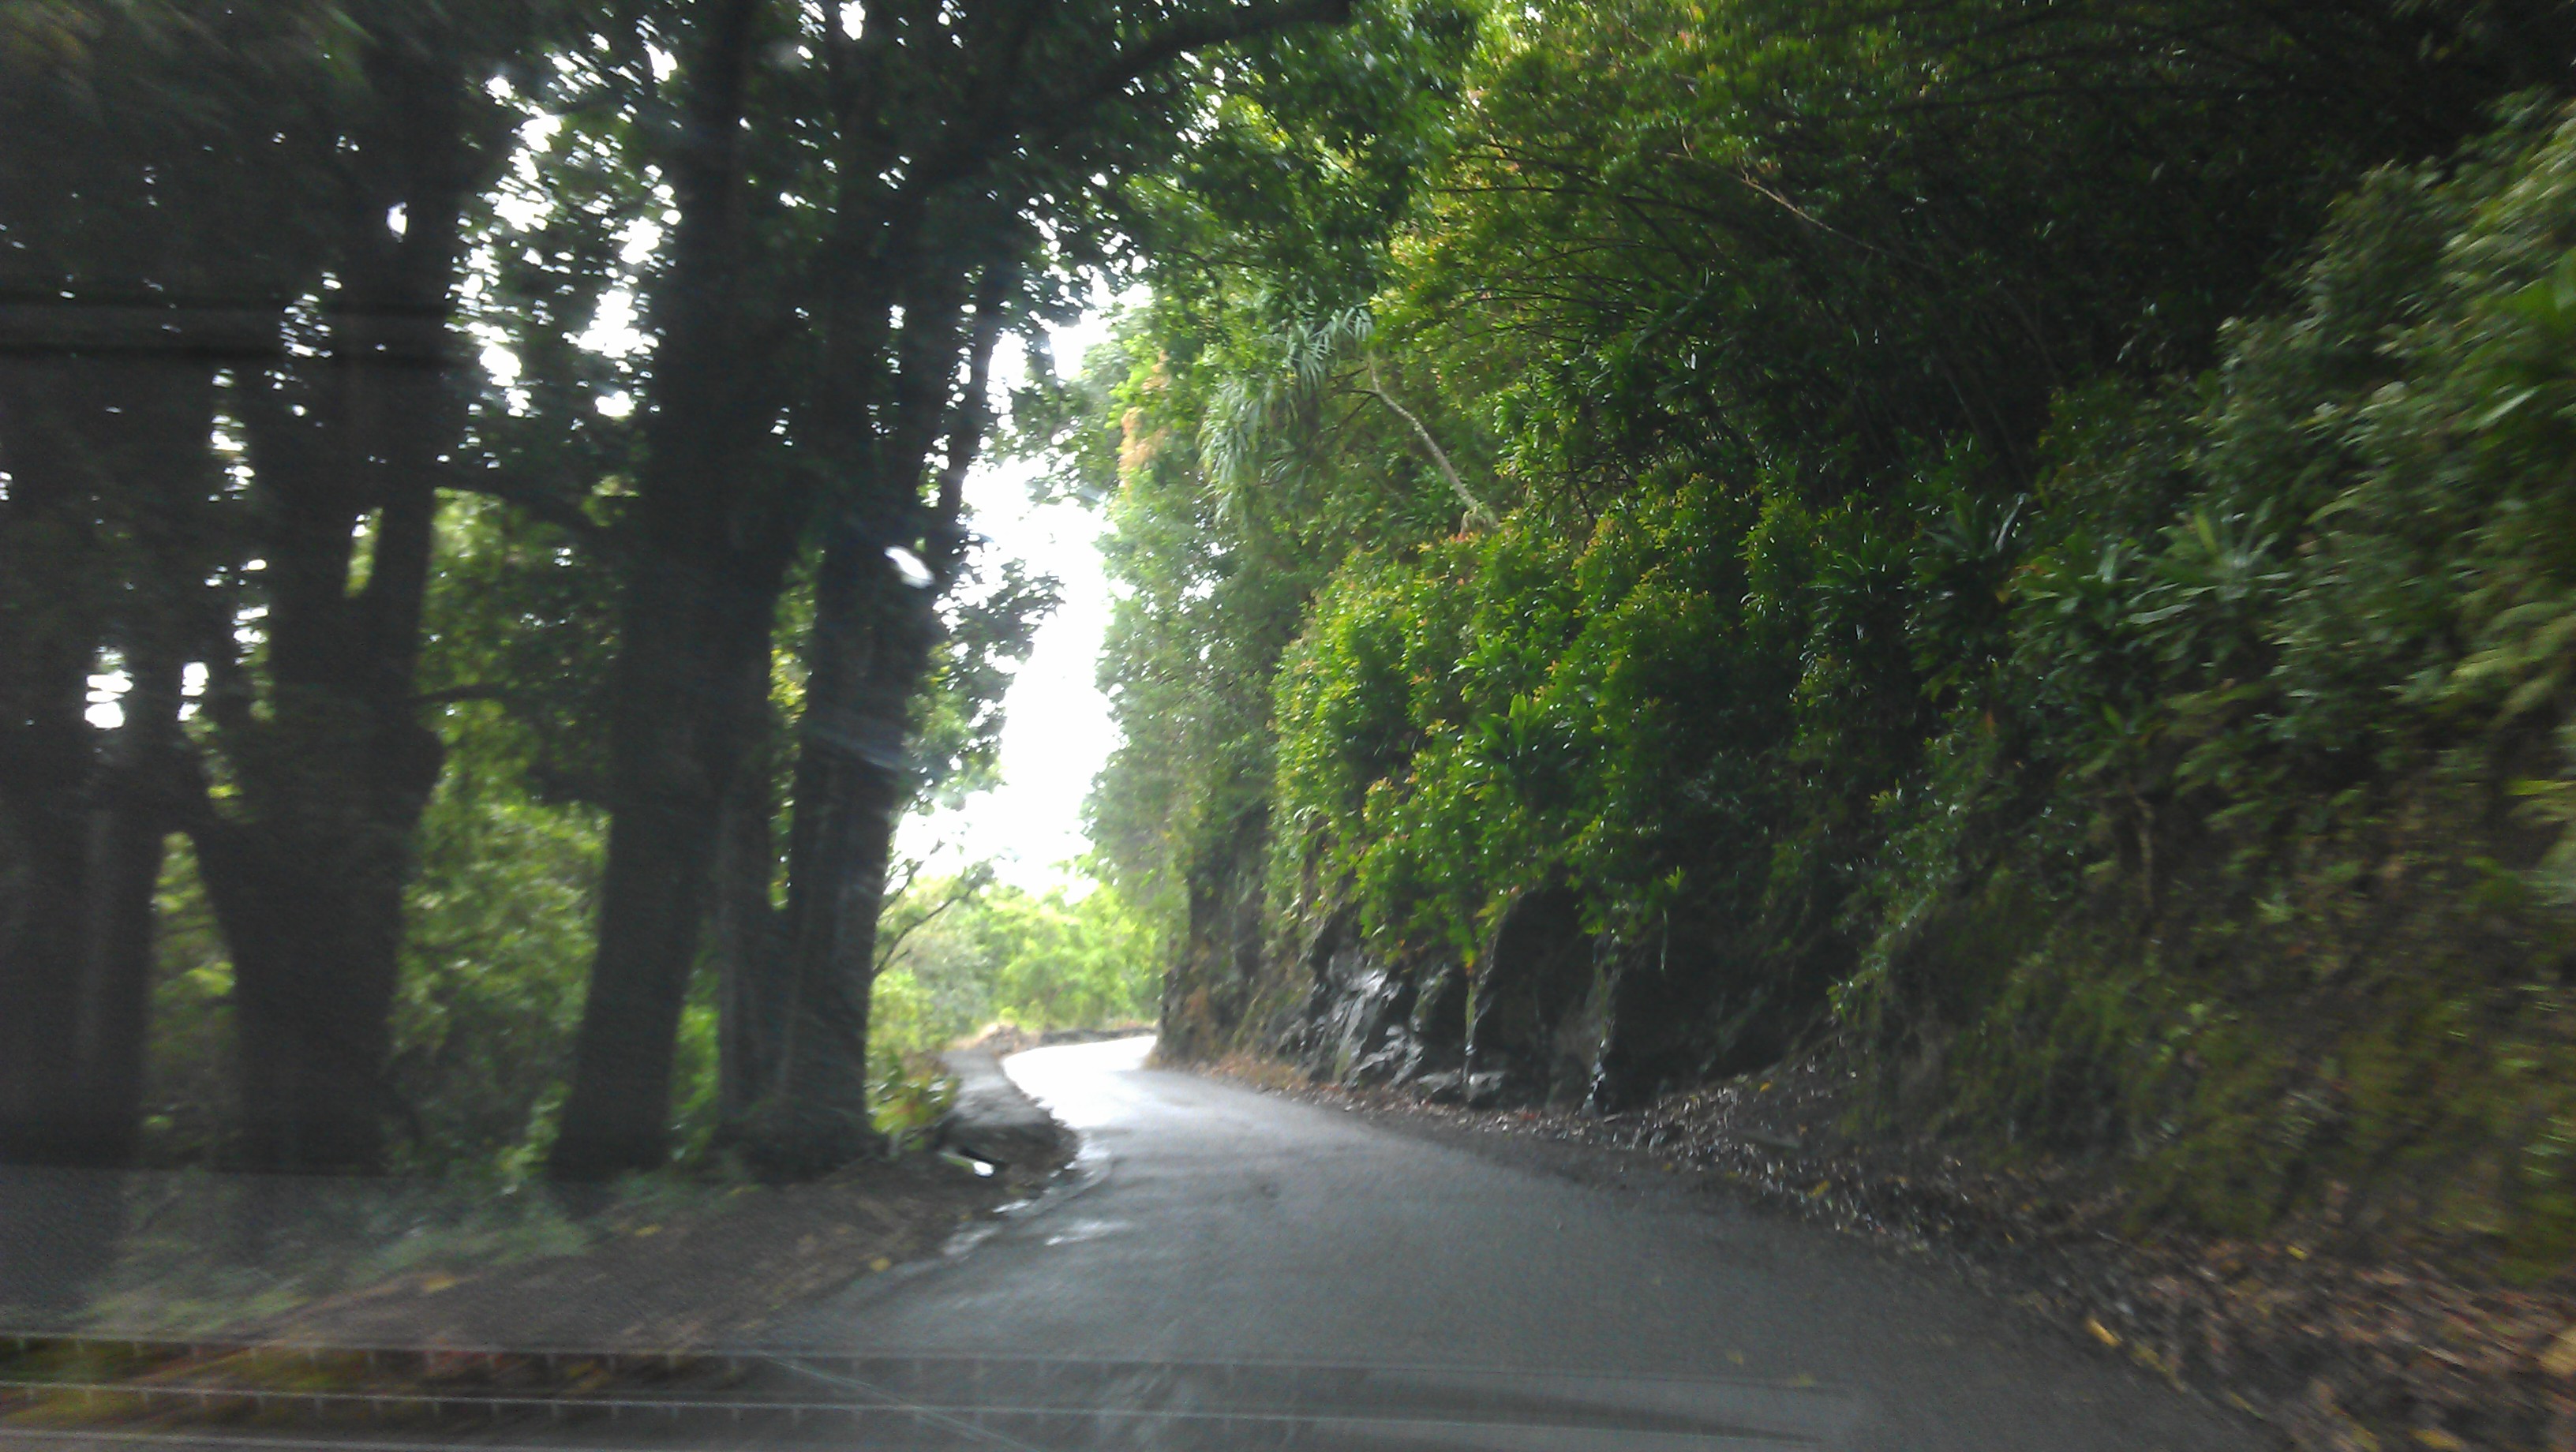 2/21/2012 Rainy Road to Hana